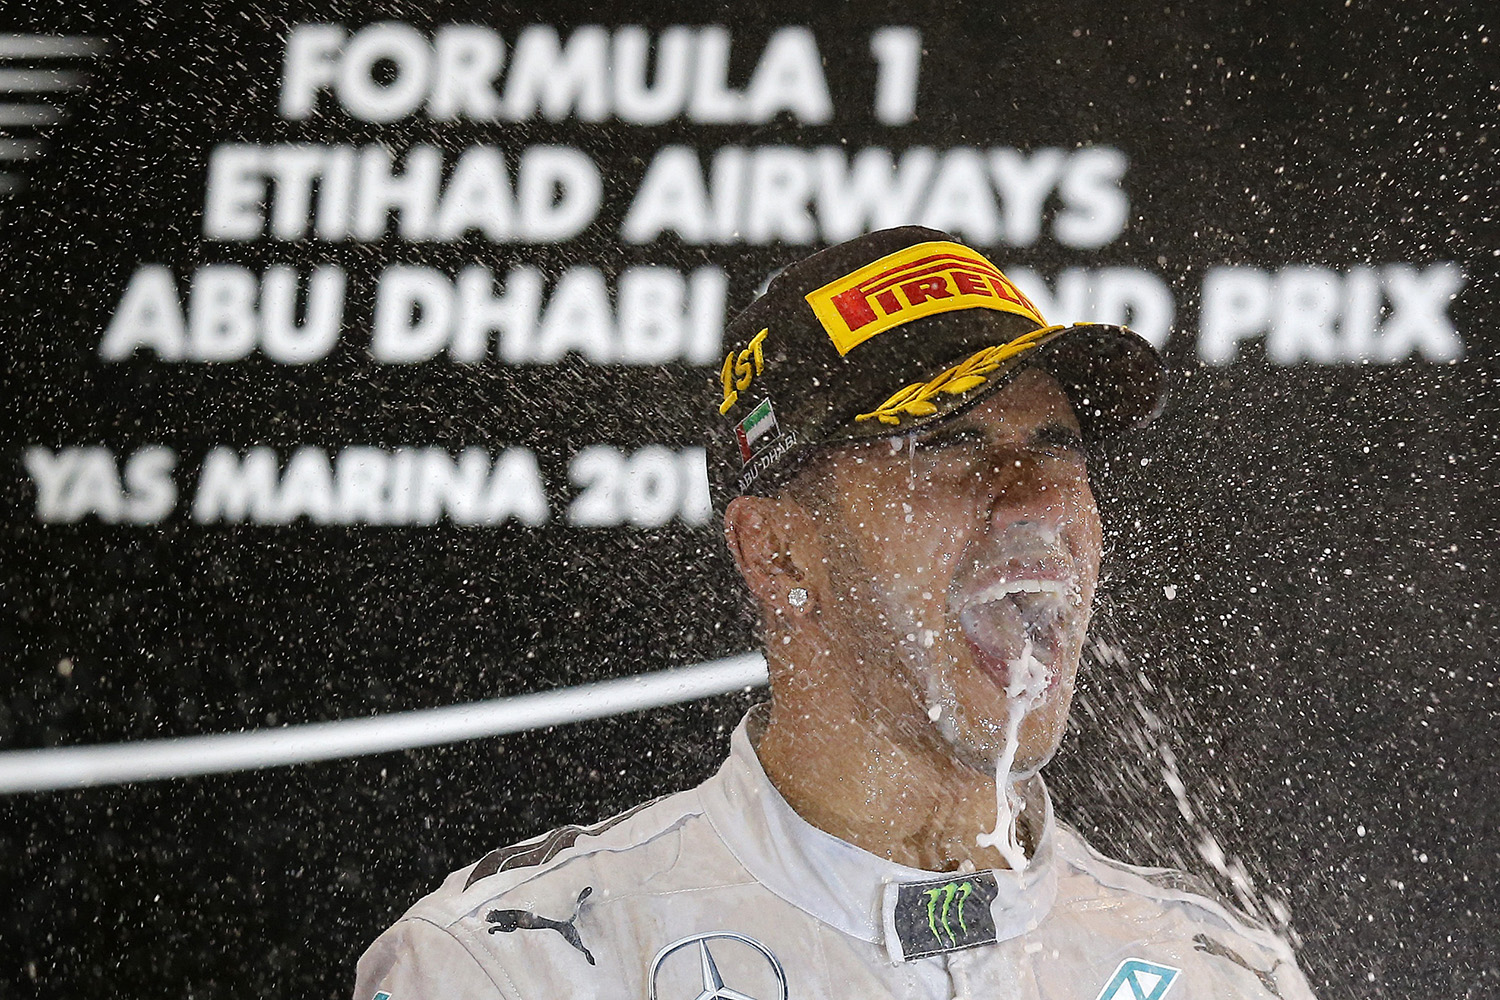 Hamilton, campeón del Mundo entre lágrimas; Alonso termina con un mal Ferrari